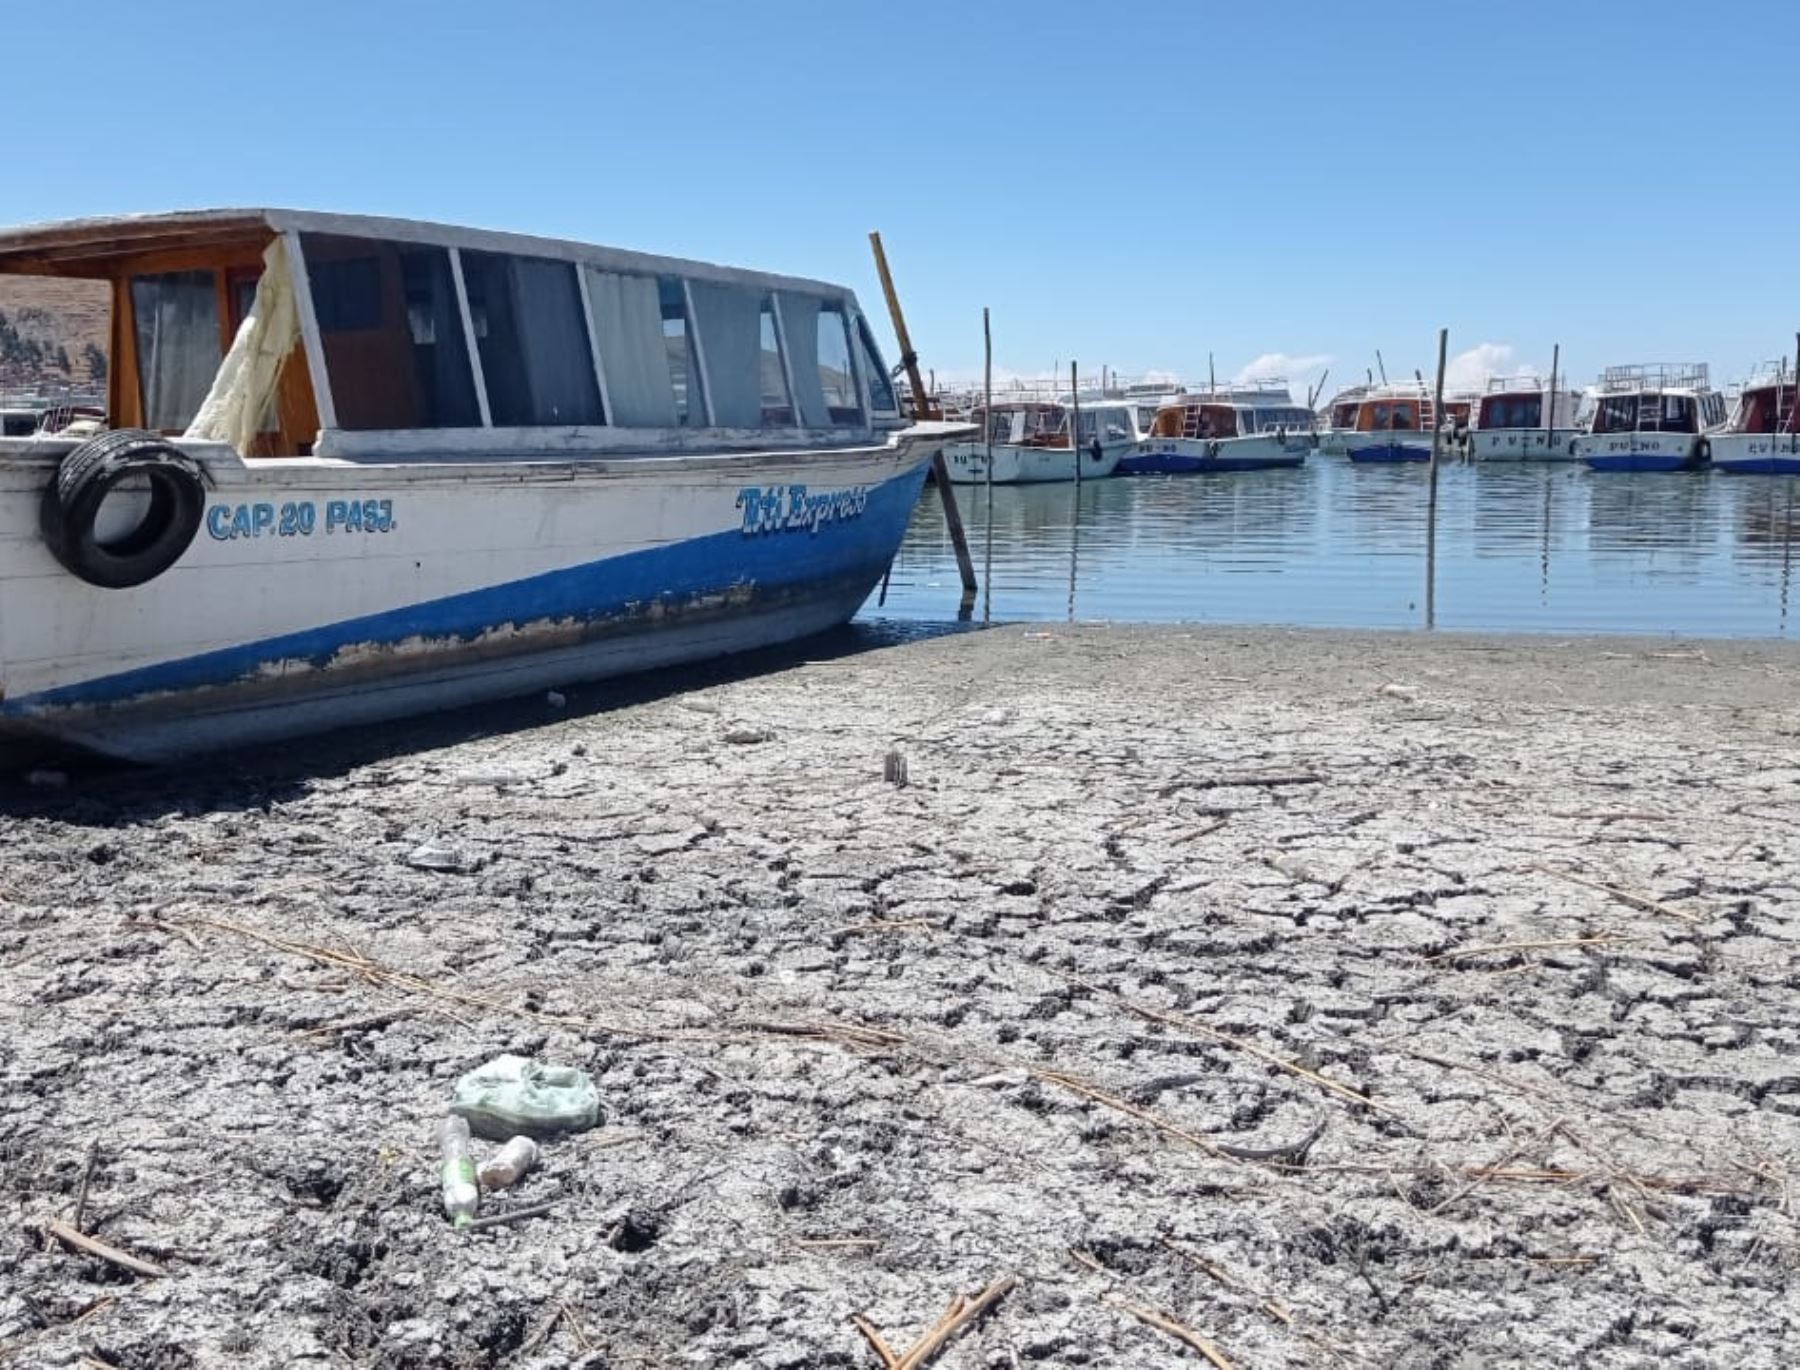 El nivel del agua del lago Titicaca continúa en descenso a causa del déficit de lluvias que afecta a Puno y ya supera los 60 centímetros, afirmó el Senamhi. Foto: Alberto Alejo